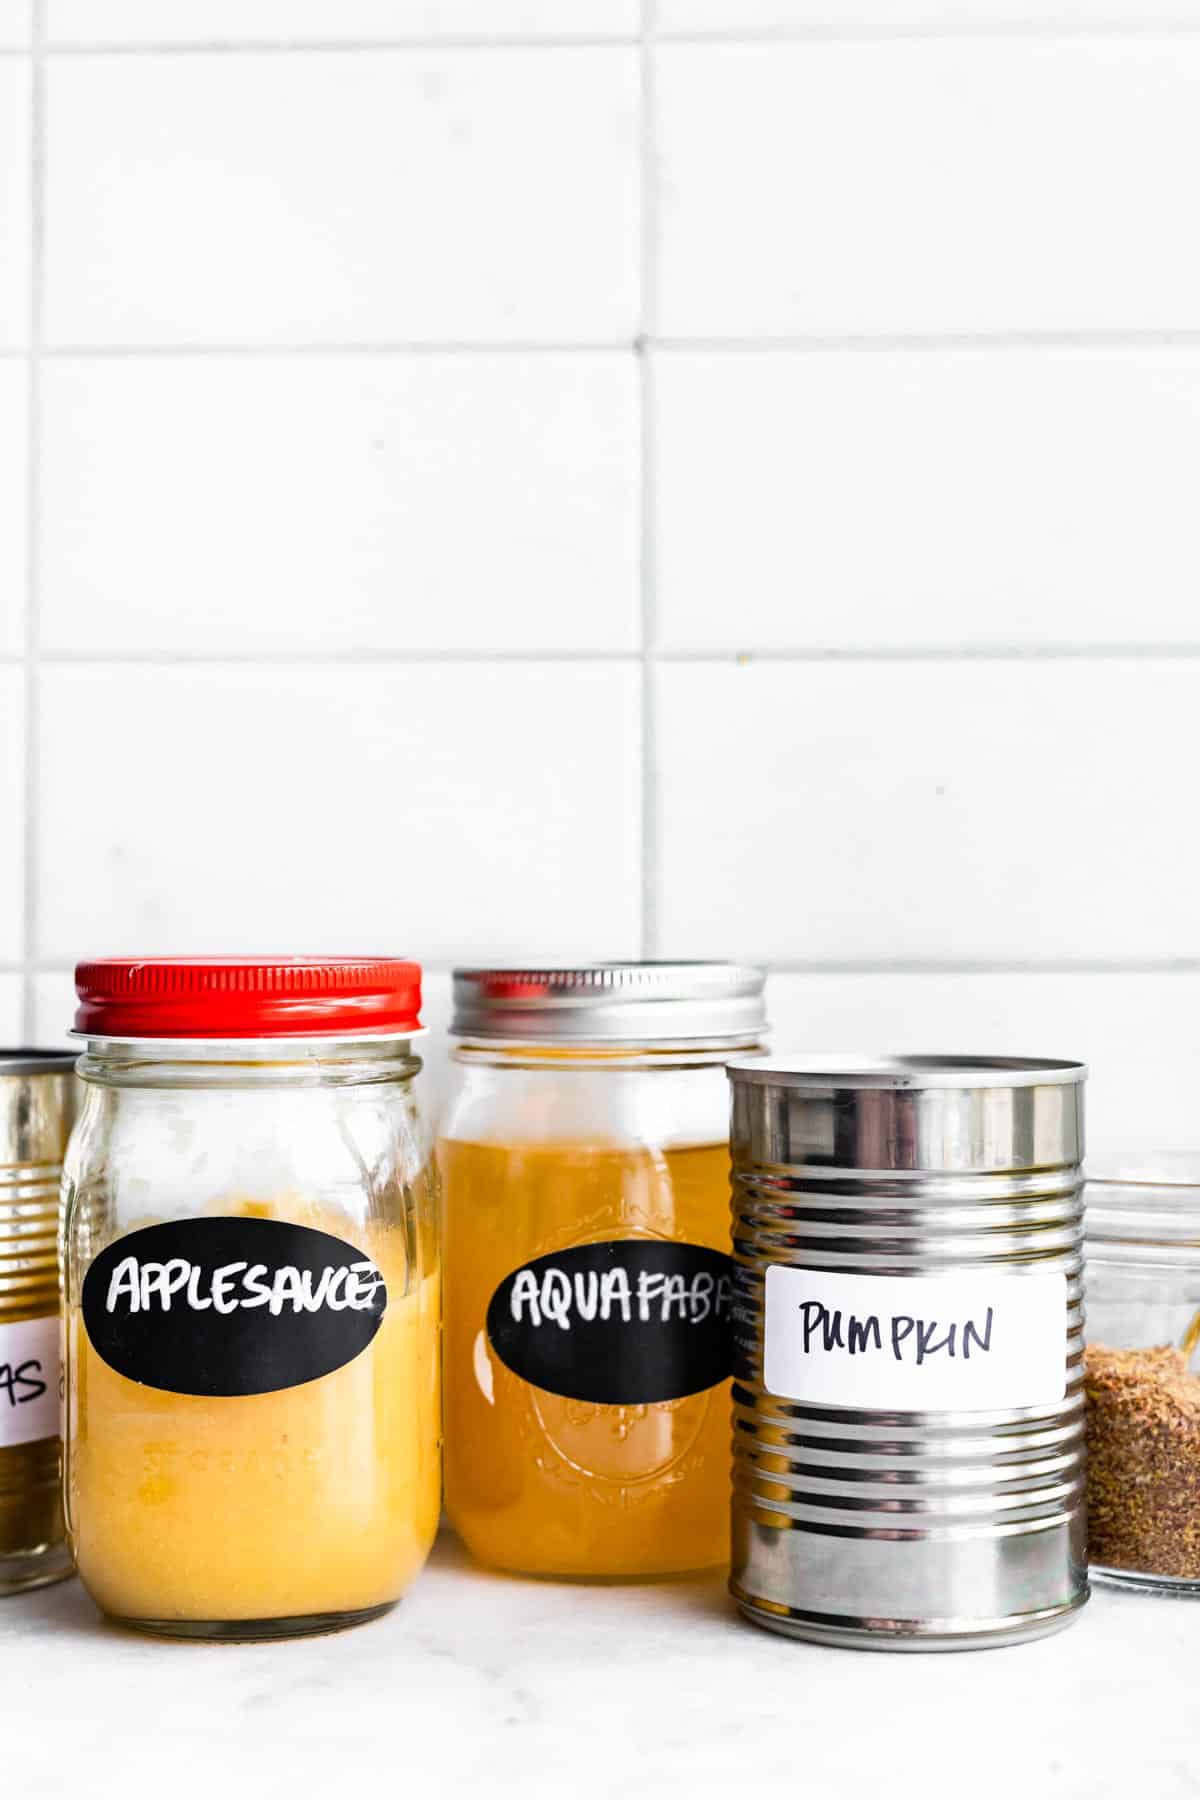 jars of aquafaba, applesauce, and pumpkin for vegan egg replacers